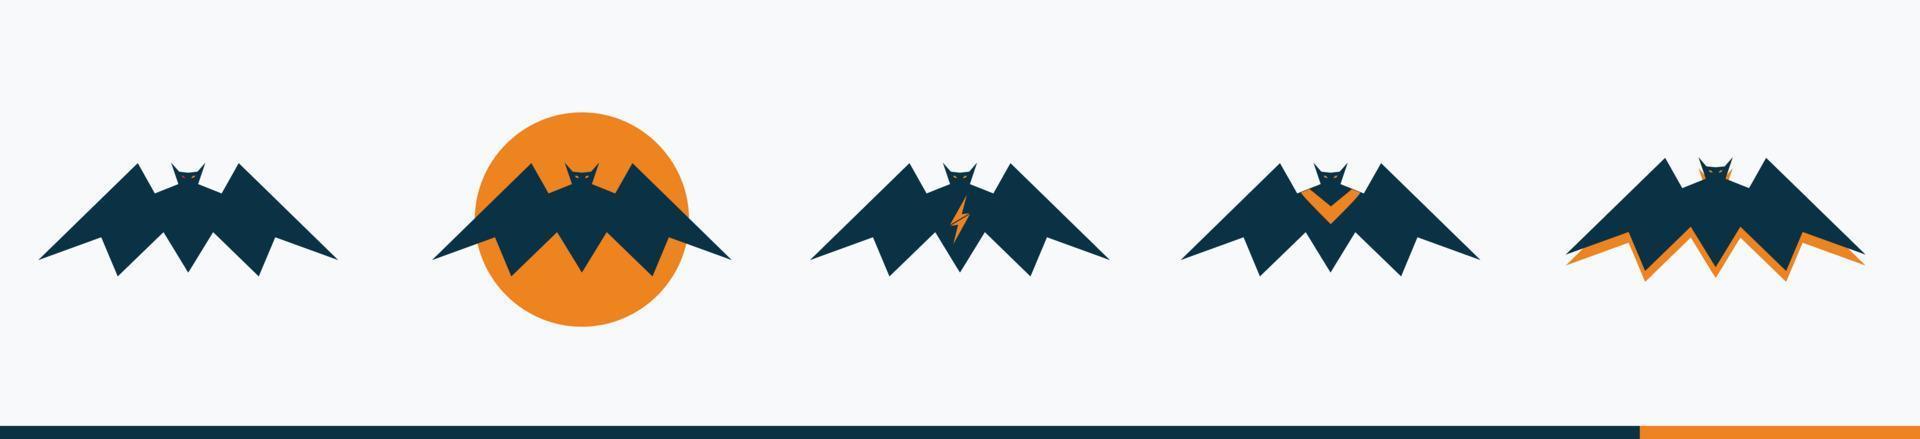 Böse Fledermäuse setzen Logo-Symbol isoliert auf weißem Hintergrund vektor